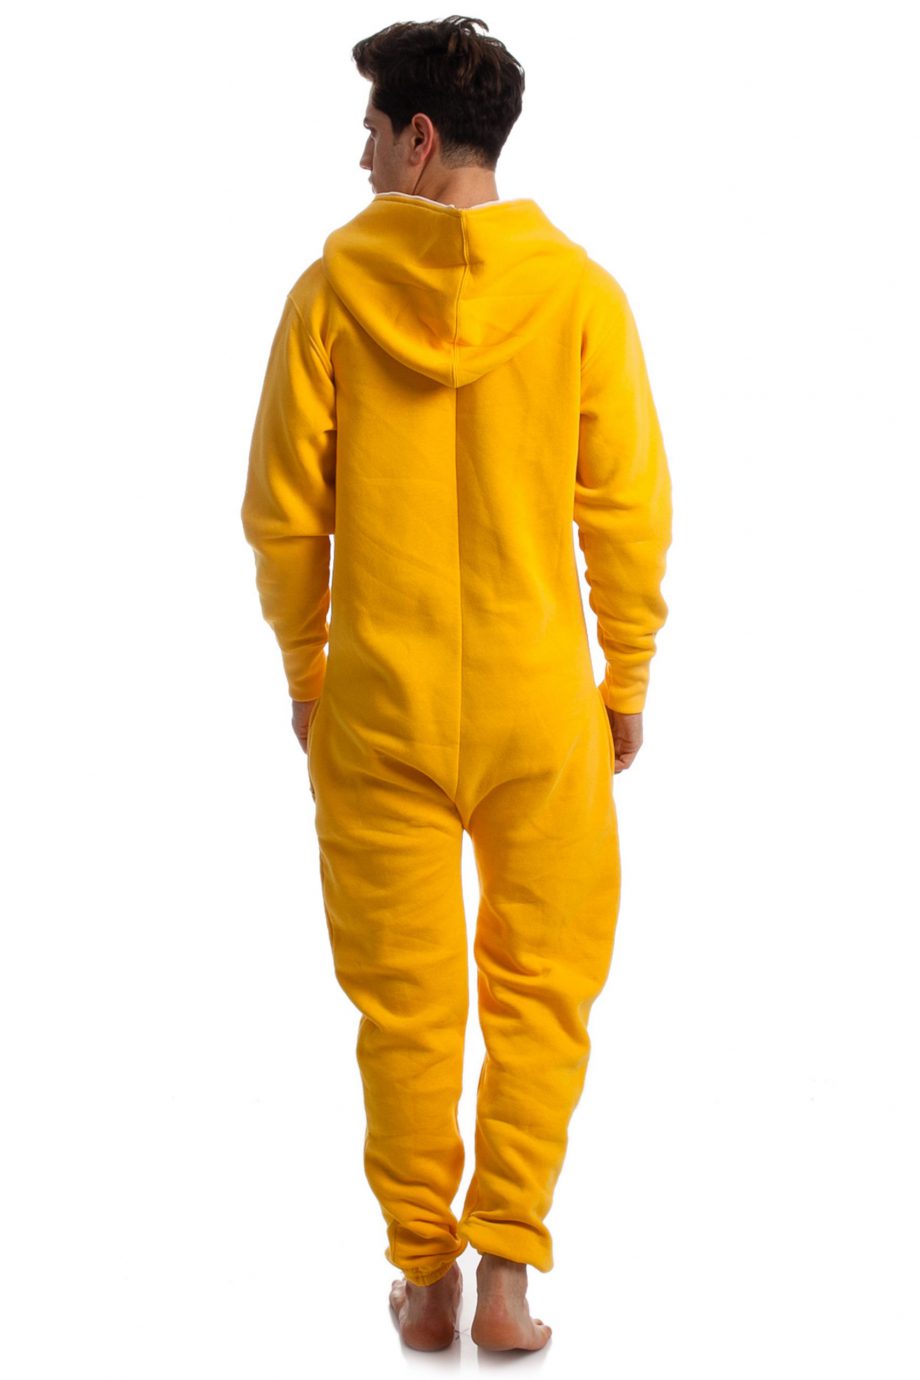 1076-honey-bee-onesie-jumpsuit-4-1-scaled-1.jpg